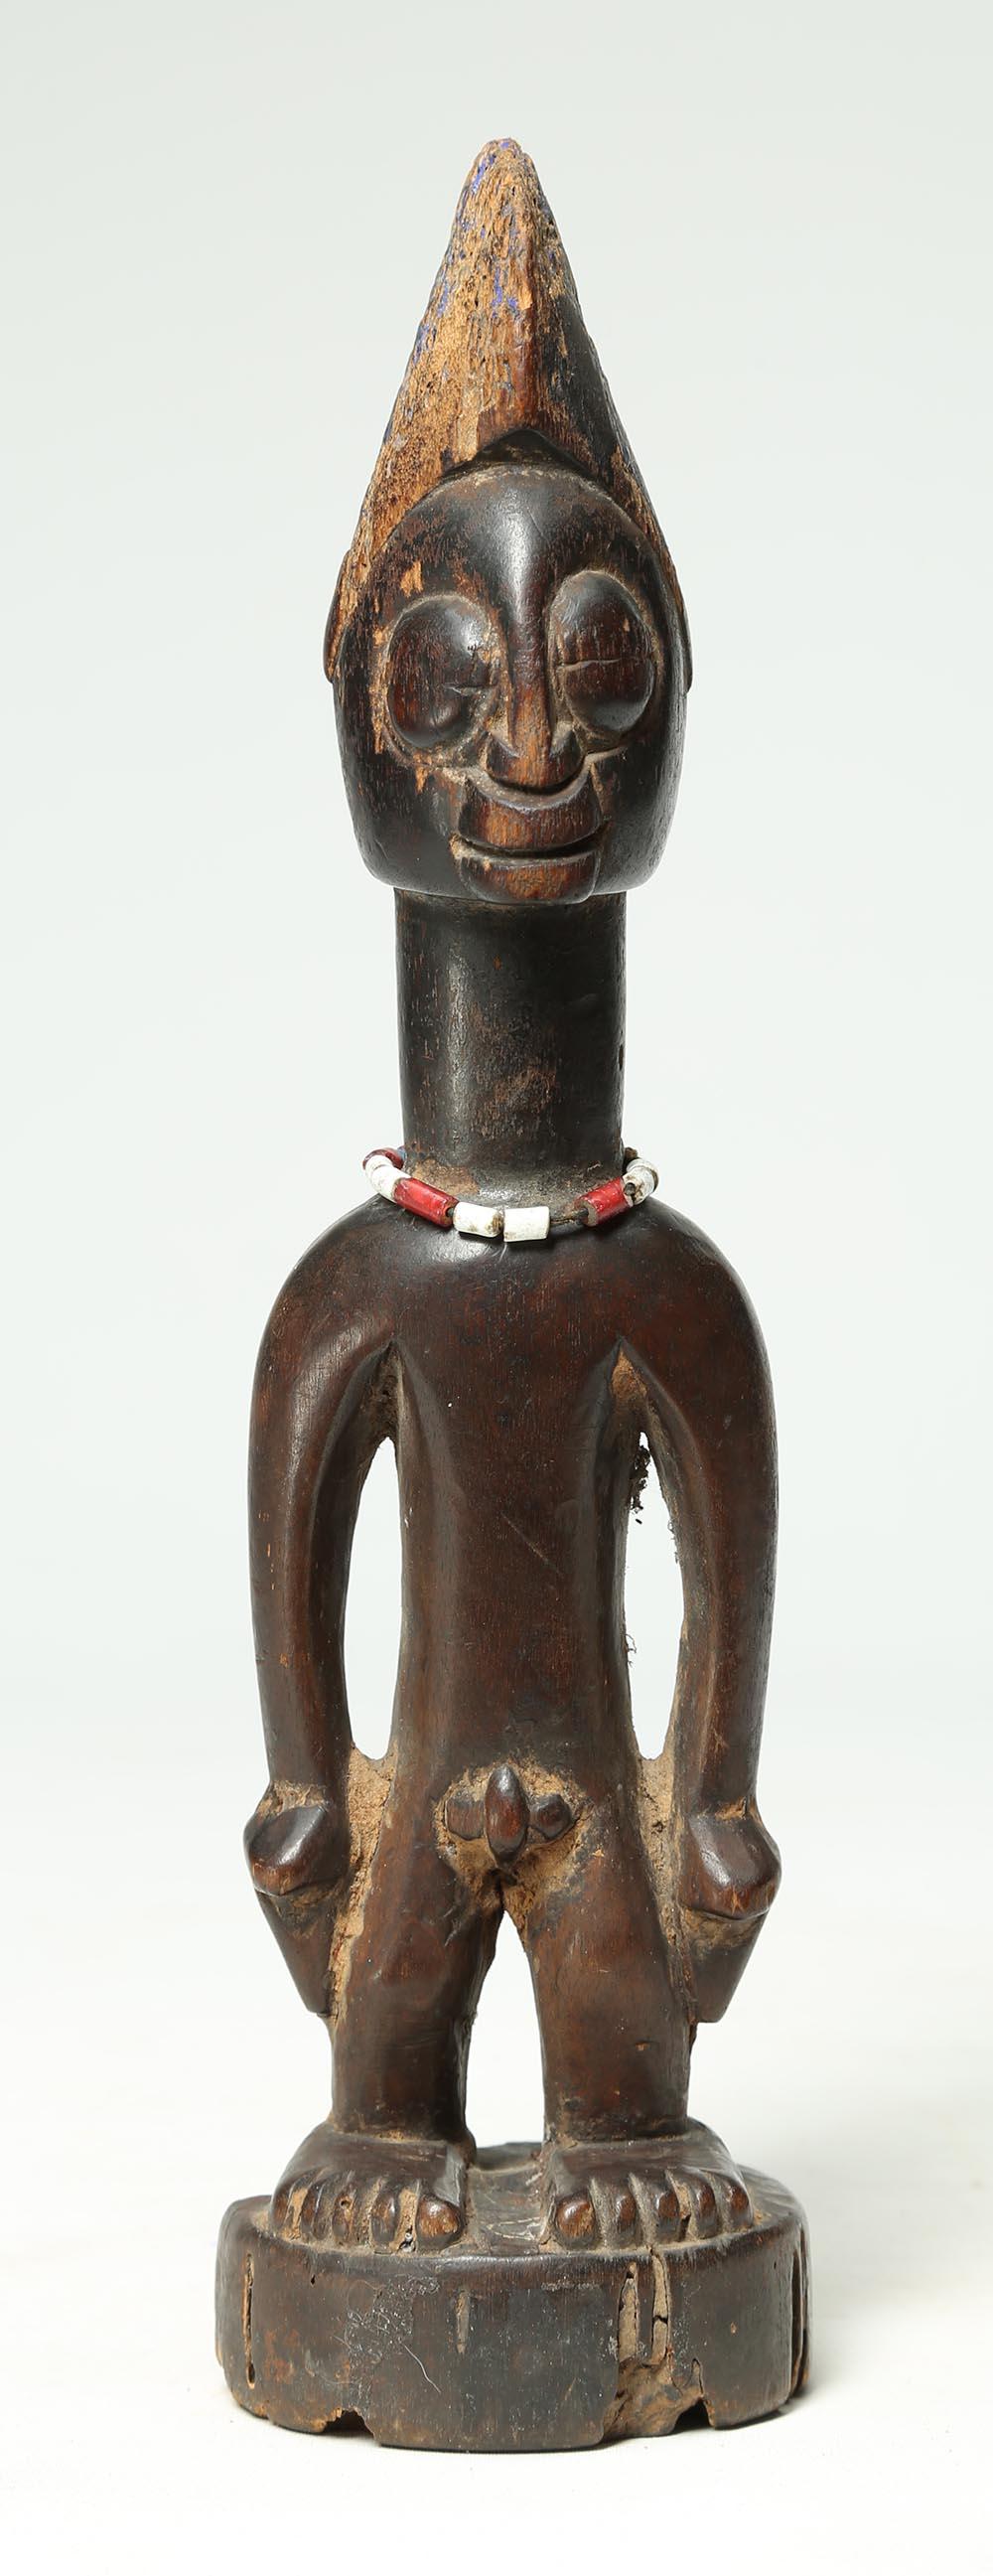 Wood Yoruba Tribal Male Figure, an Ibeji or Twin Figure, Nigeria, Africa, Large Eyes